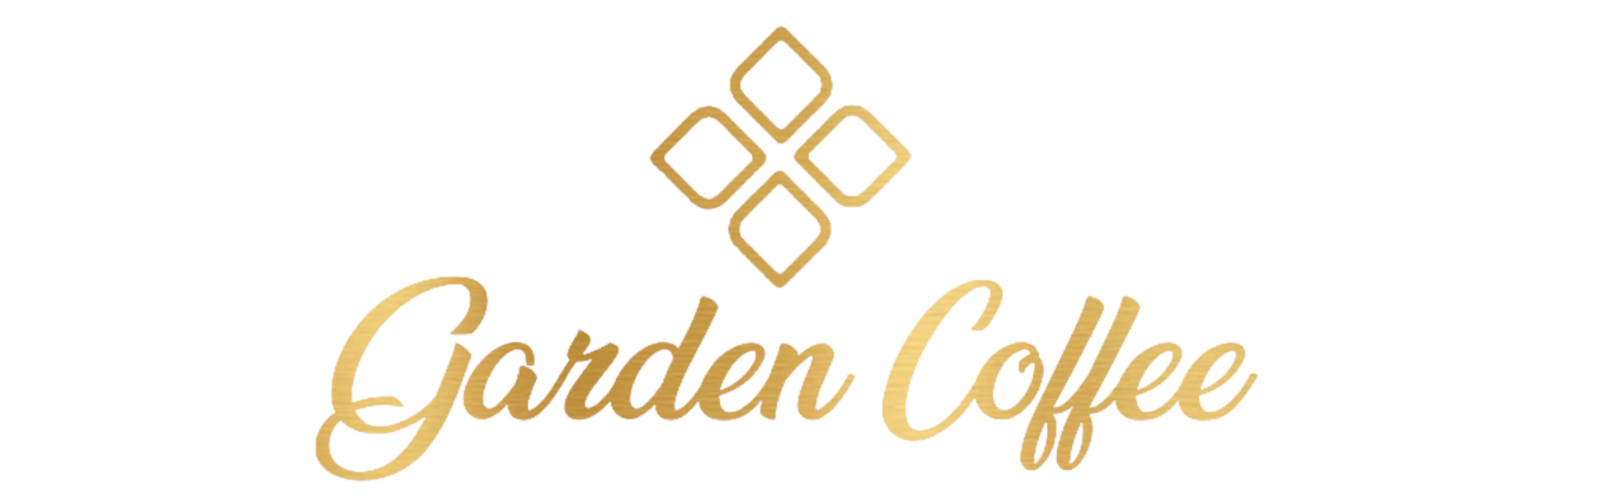 Le garden coffee